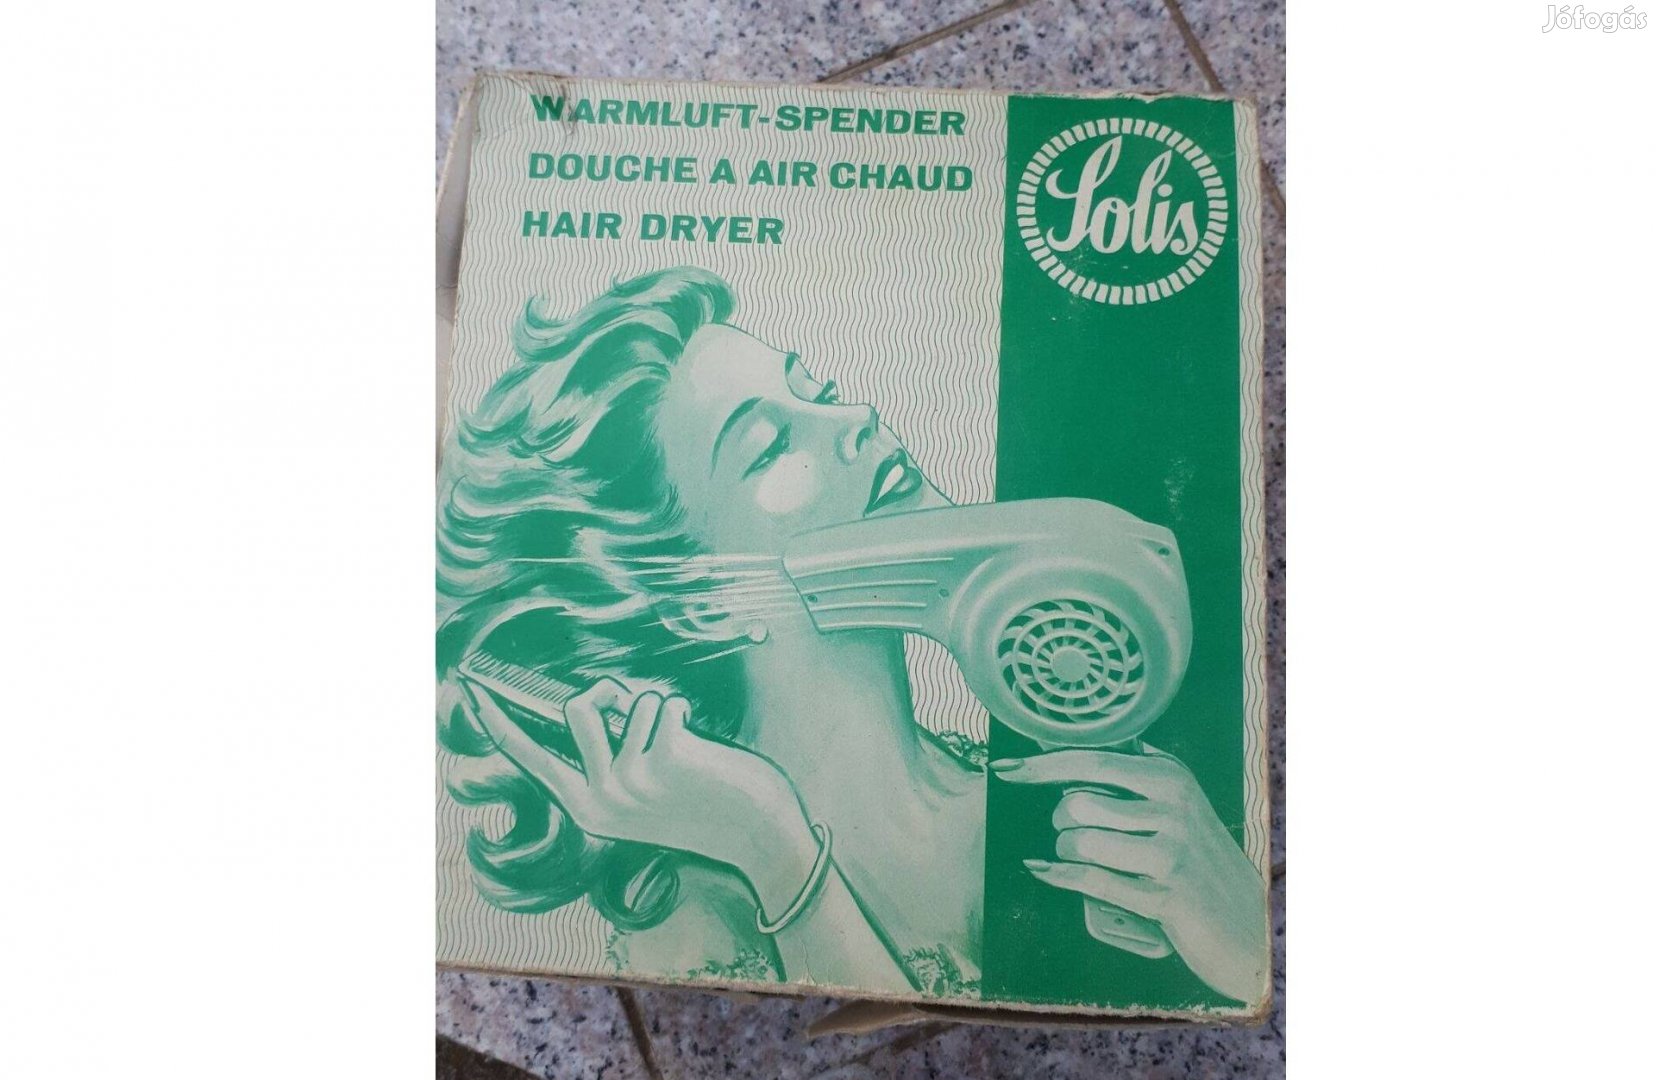 Solis 1950. évi gyártású, bakelit hajszárító gyűjtőknek